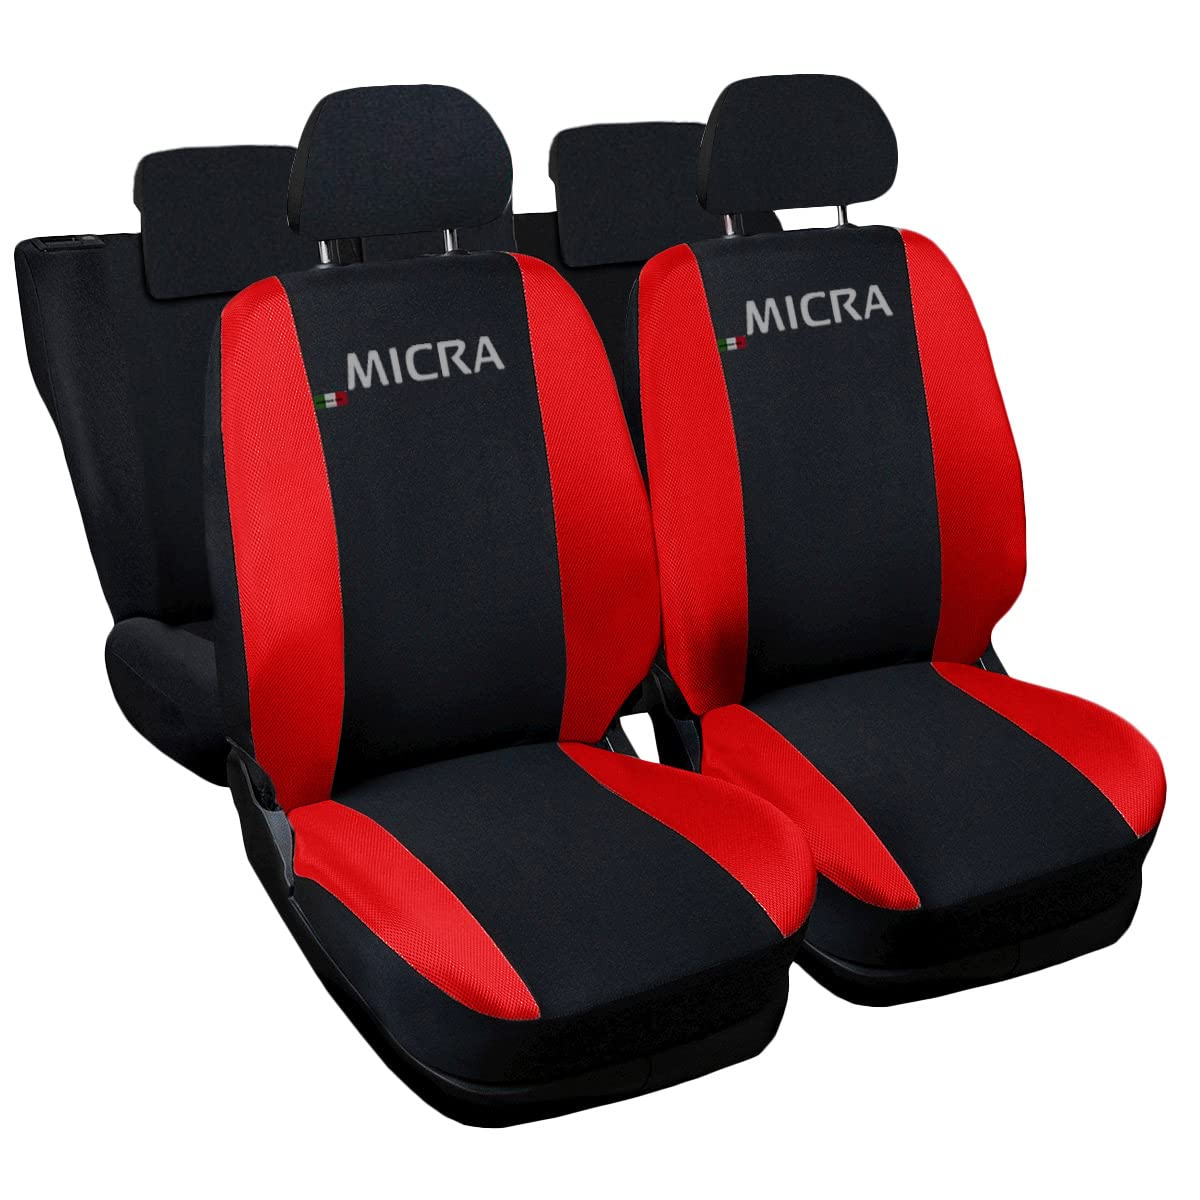 Auto Accessori Lupex - Sitzbezüge für Autositz, kompatibel Autositzbezüge für Micra, schwarz rot, Made in Italy, Set Sitzbezüge für Vorder- und Rücksitze, Polyester-Gewebe, Auto-Innenbezüge von Auto Accessori Lupex